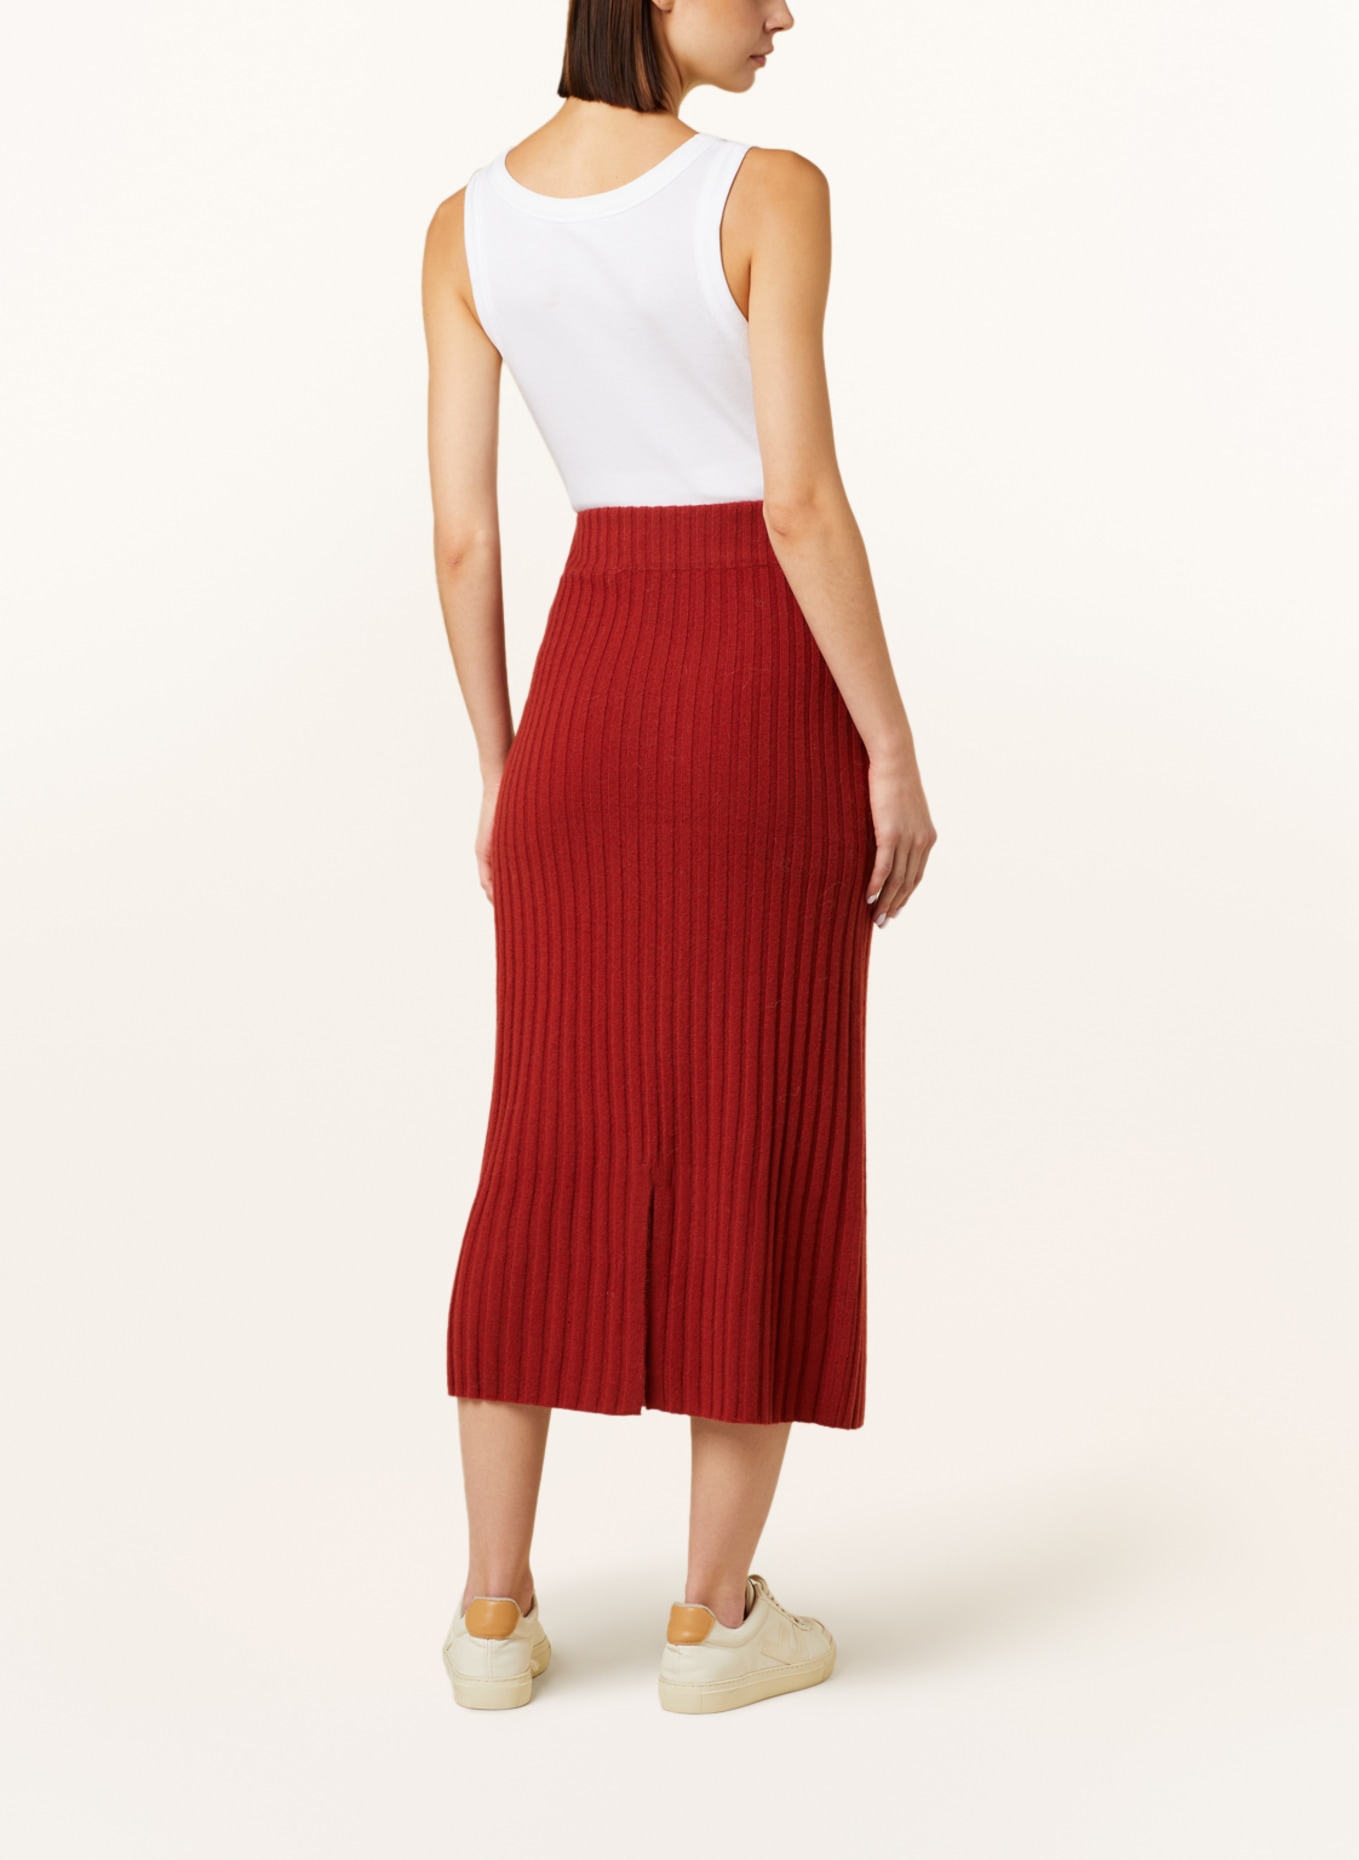 Delicatelove Knit skirt MELBOURNE made of cashmere, Color: DARK ORANGE (Image 3)